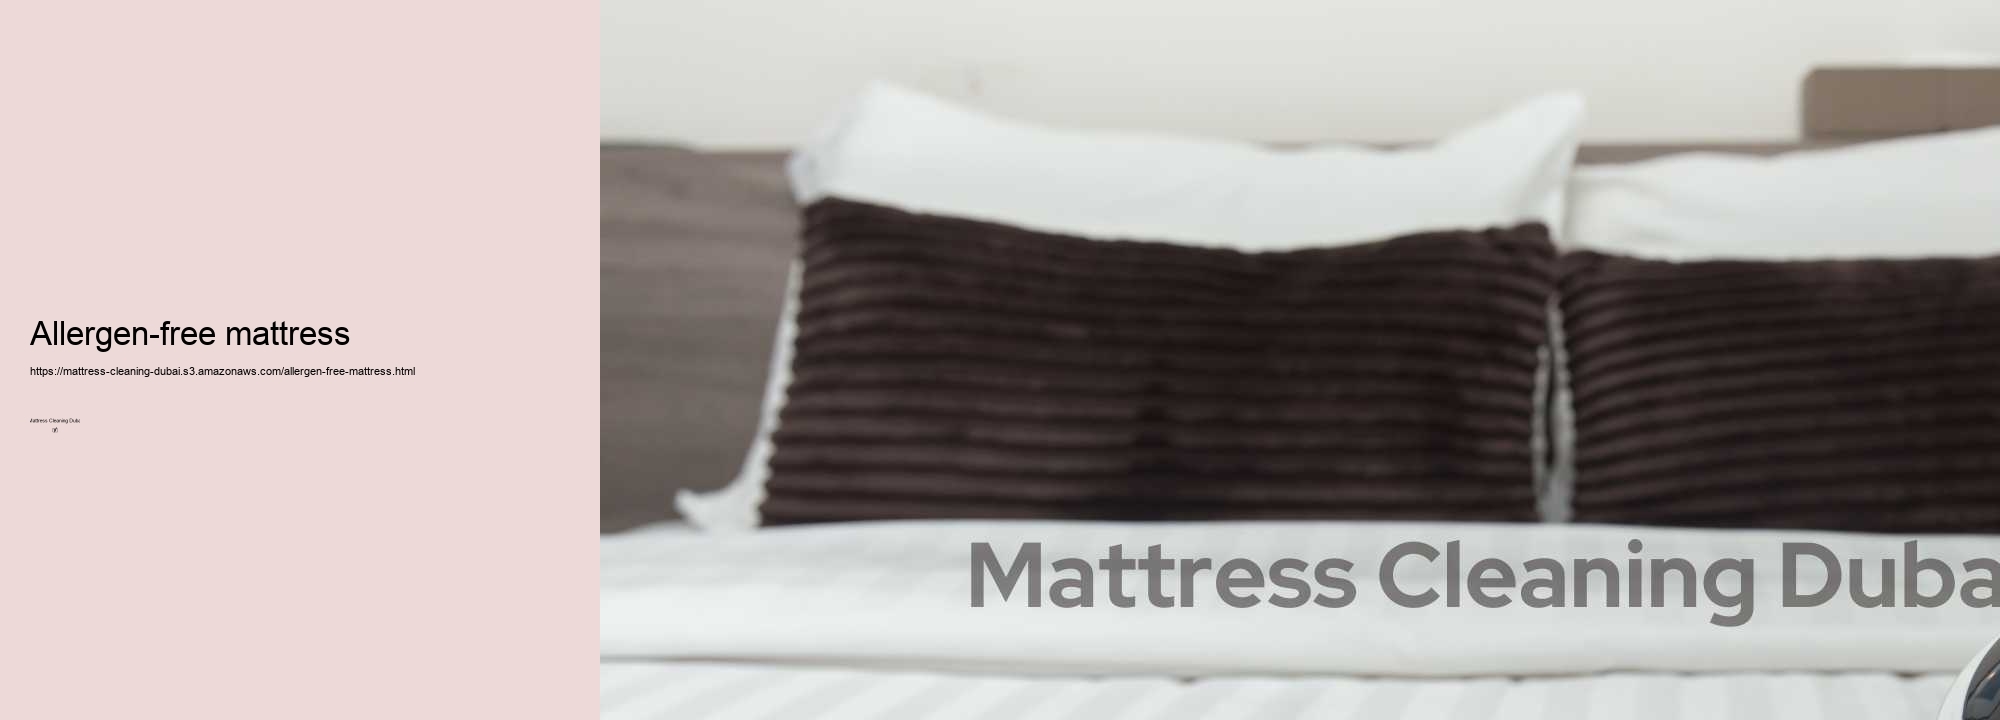 Allergen-free mattress